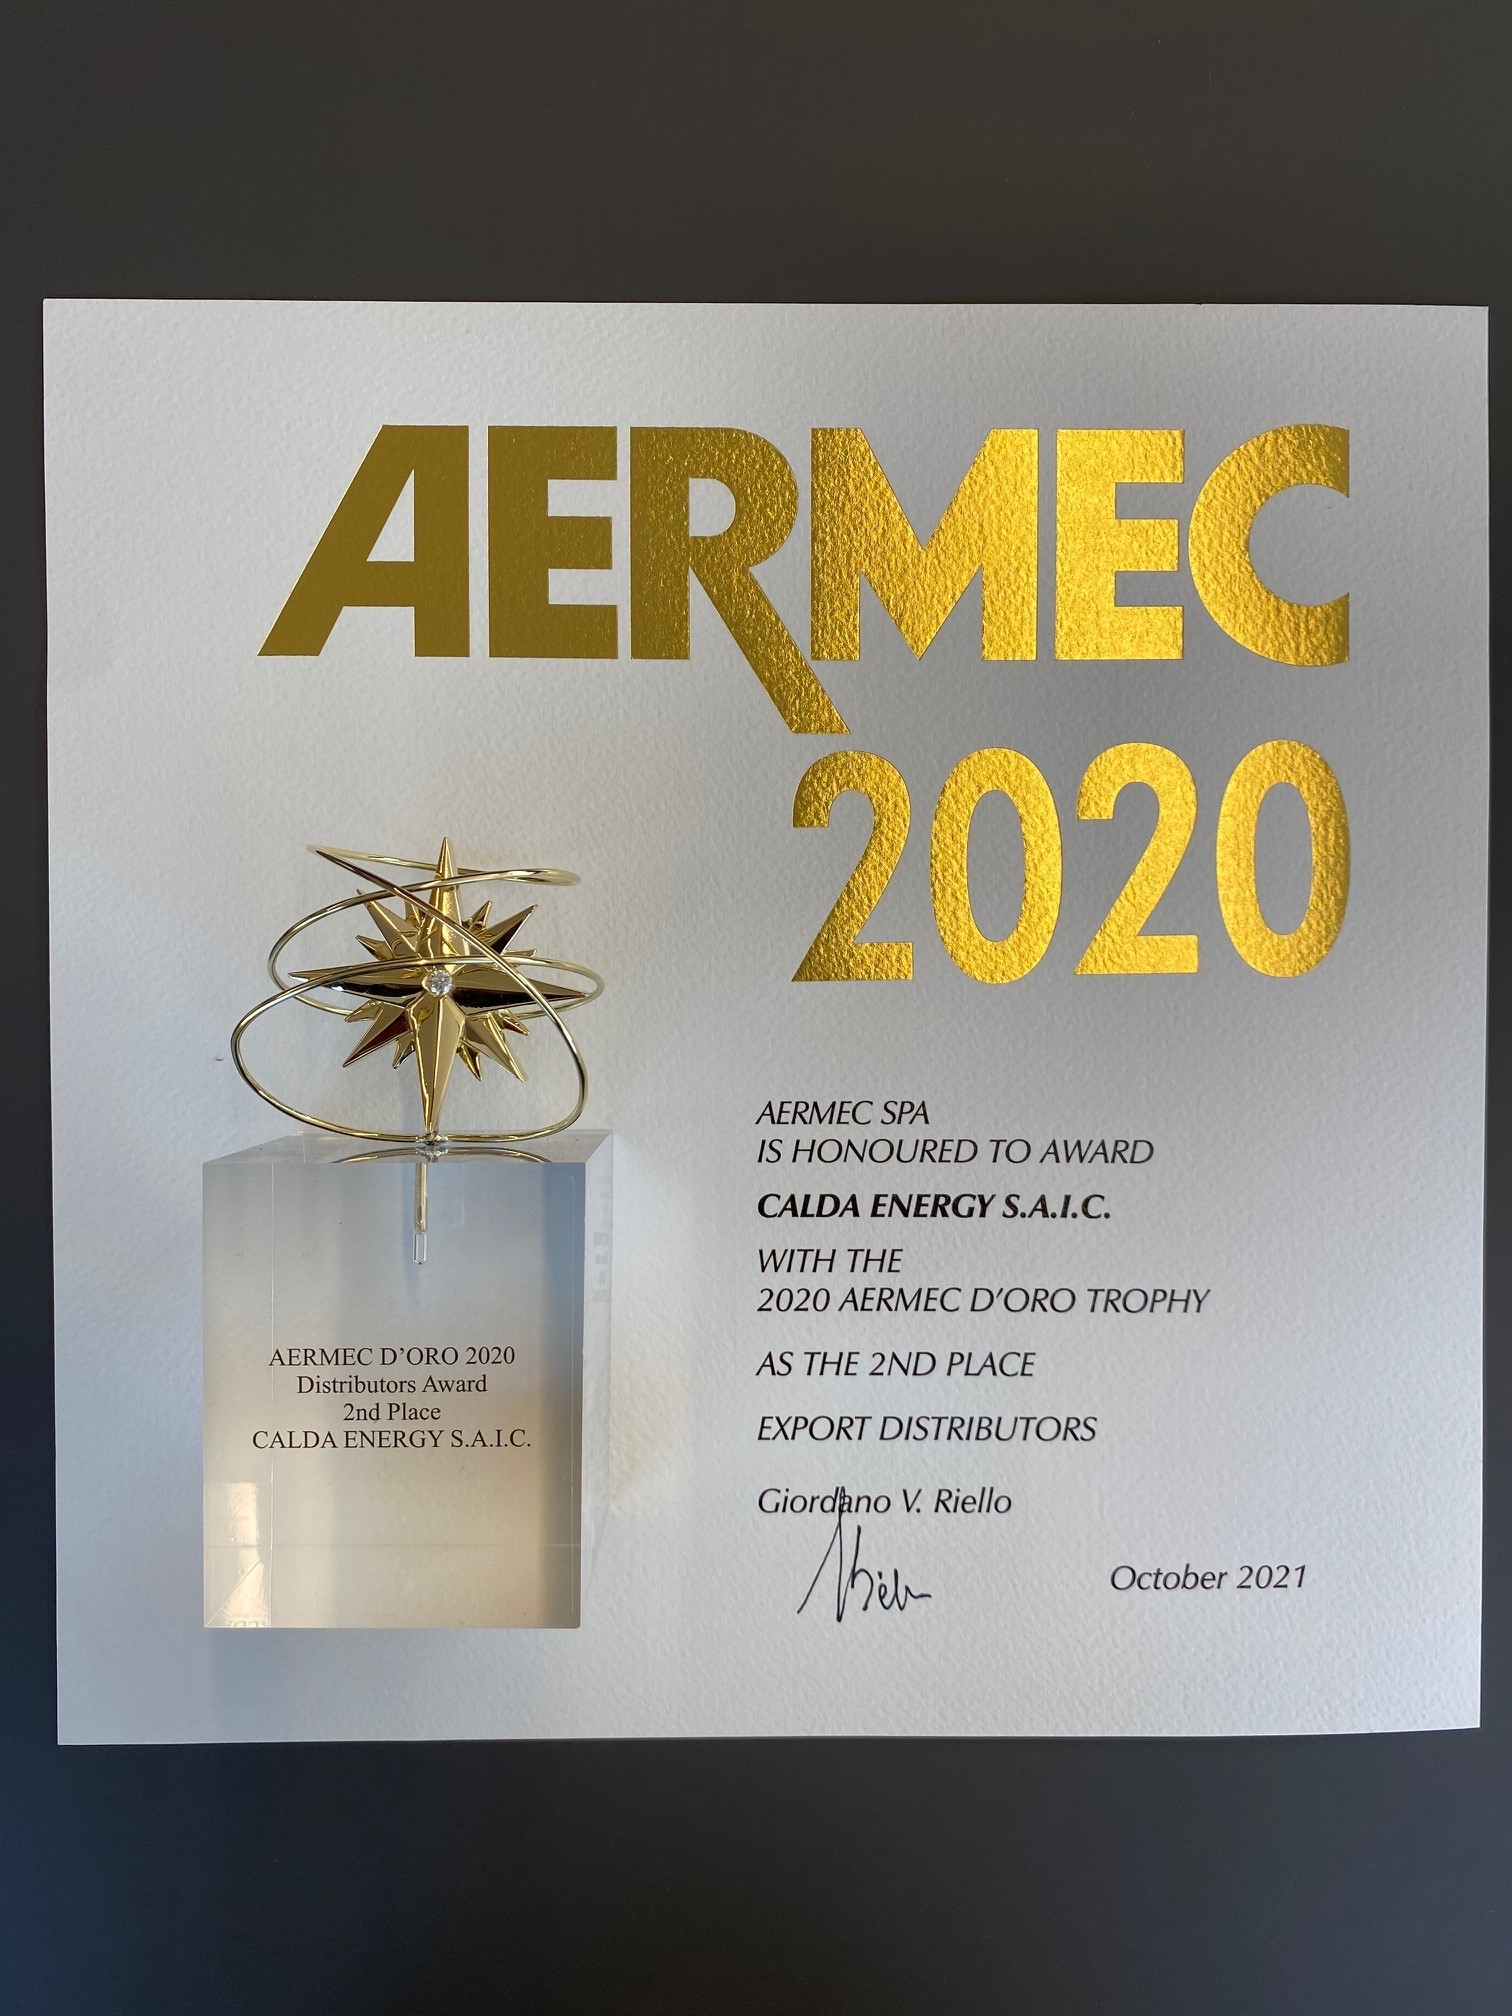 46η ΤΕΛΕΤΗ ΒΡΑΒΕΥΣΗΣ AERMEC D'ORO 2020